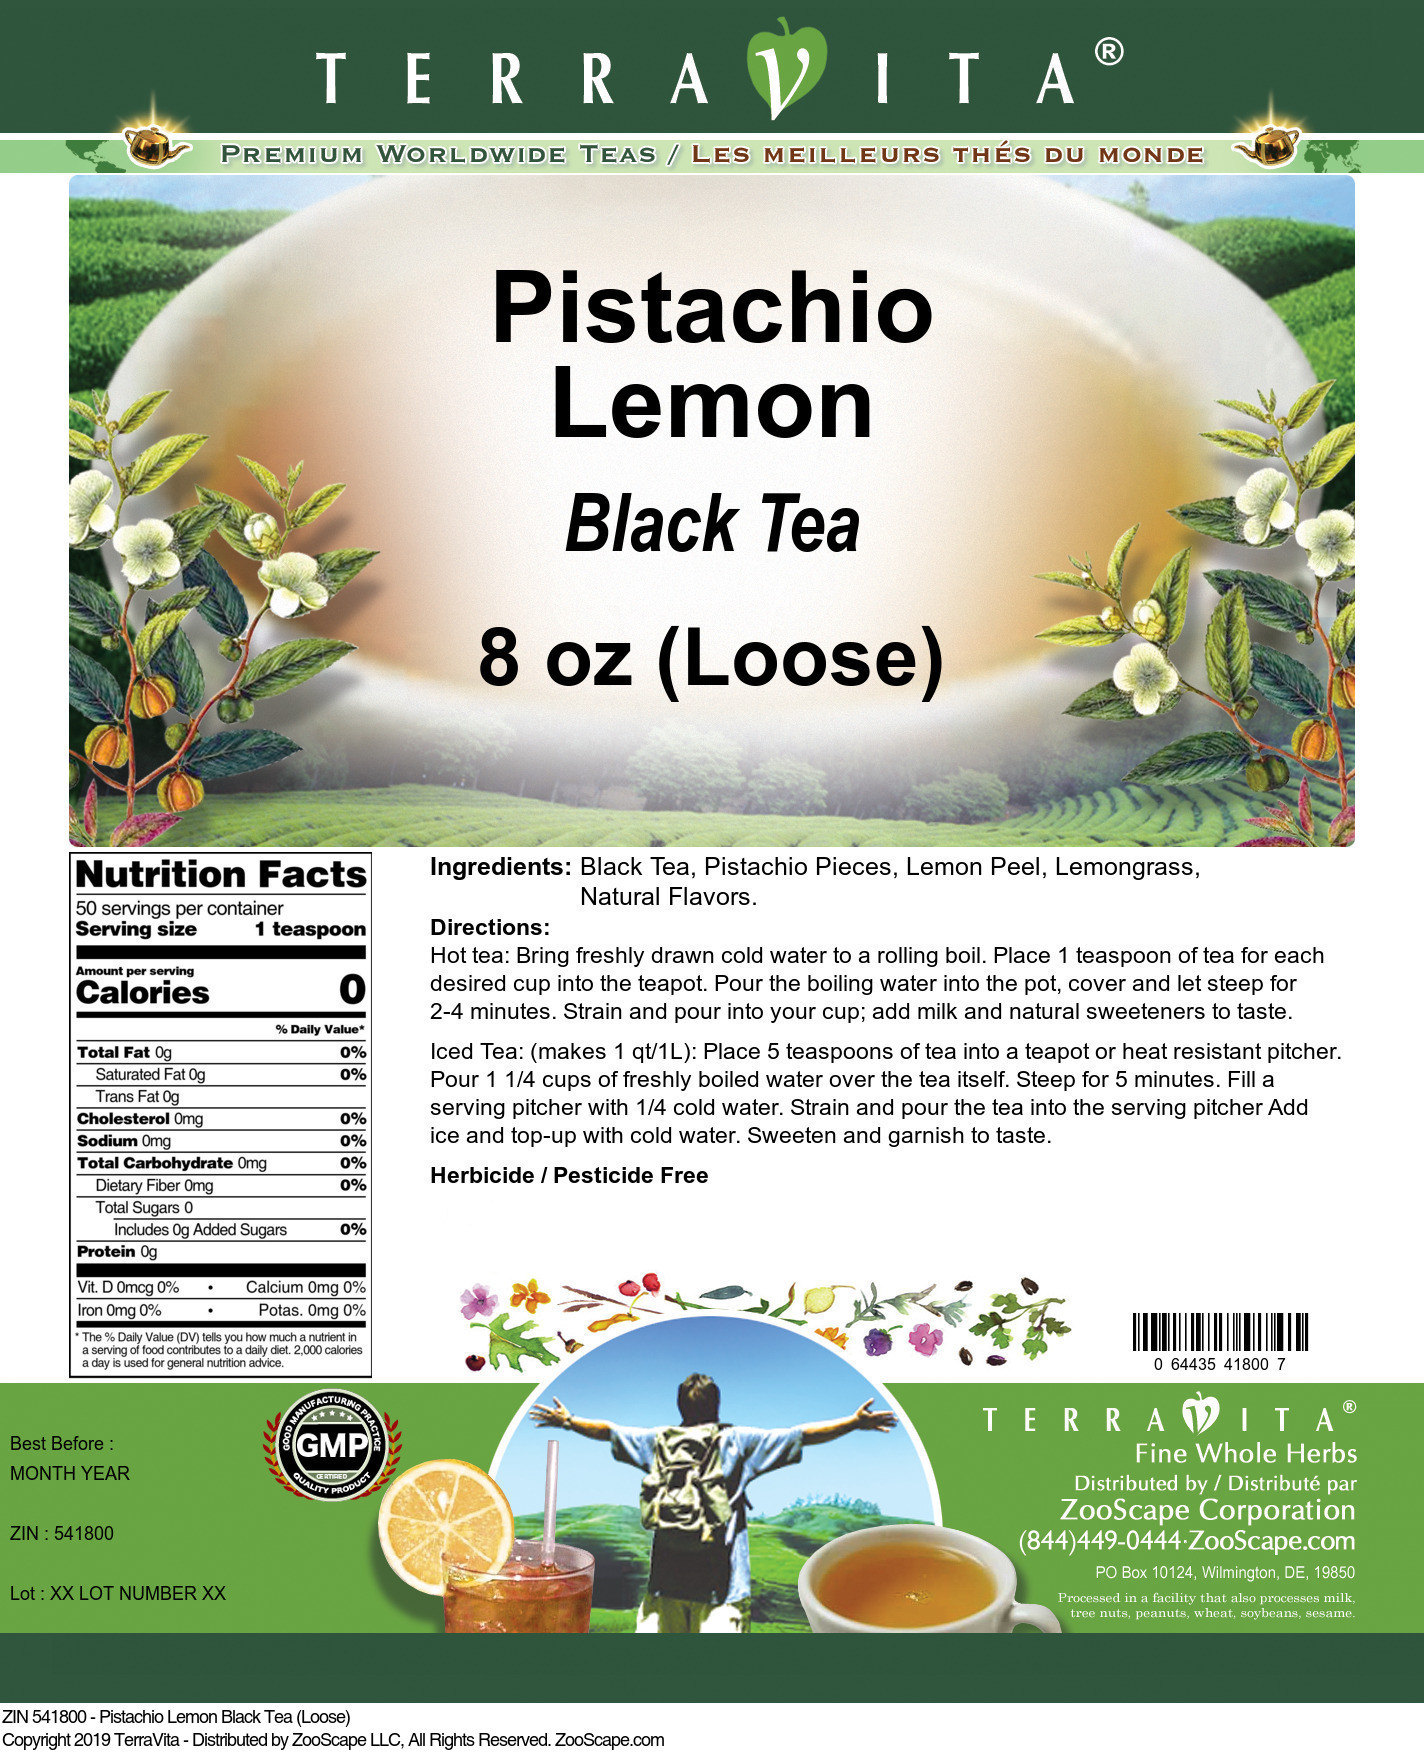 Pistachio Lemon Black Tea (Loose) - Label